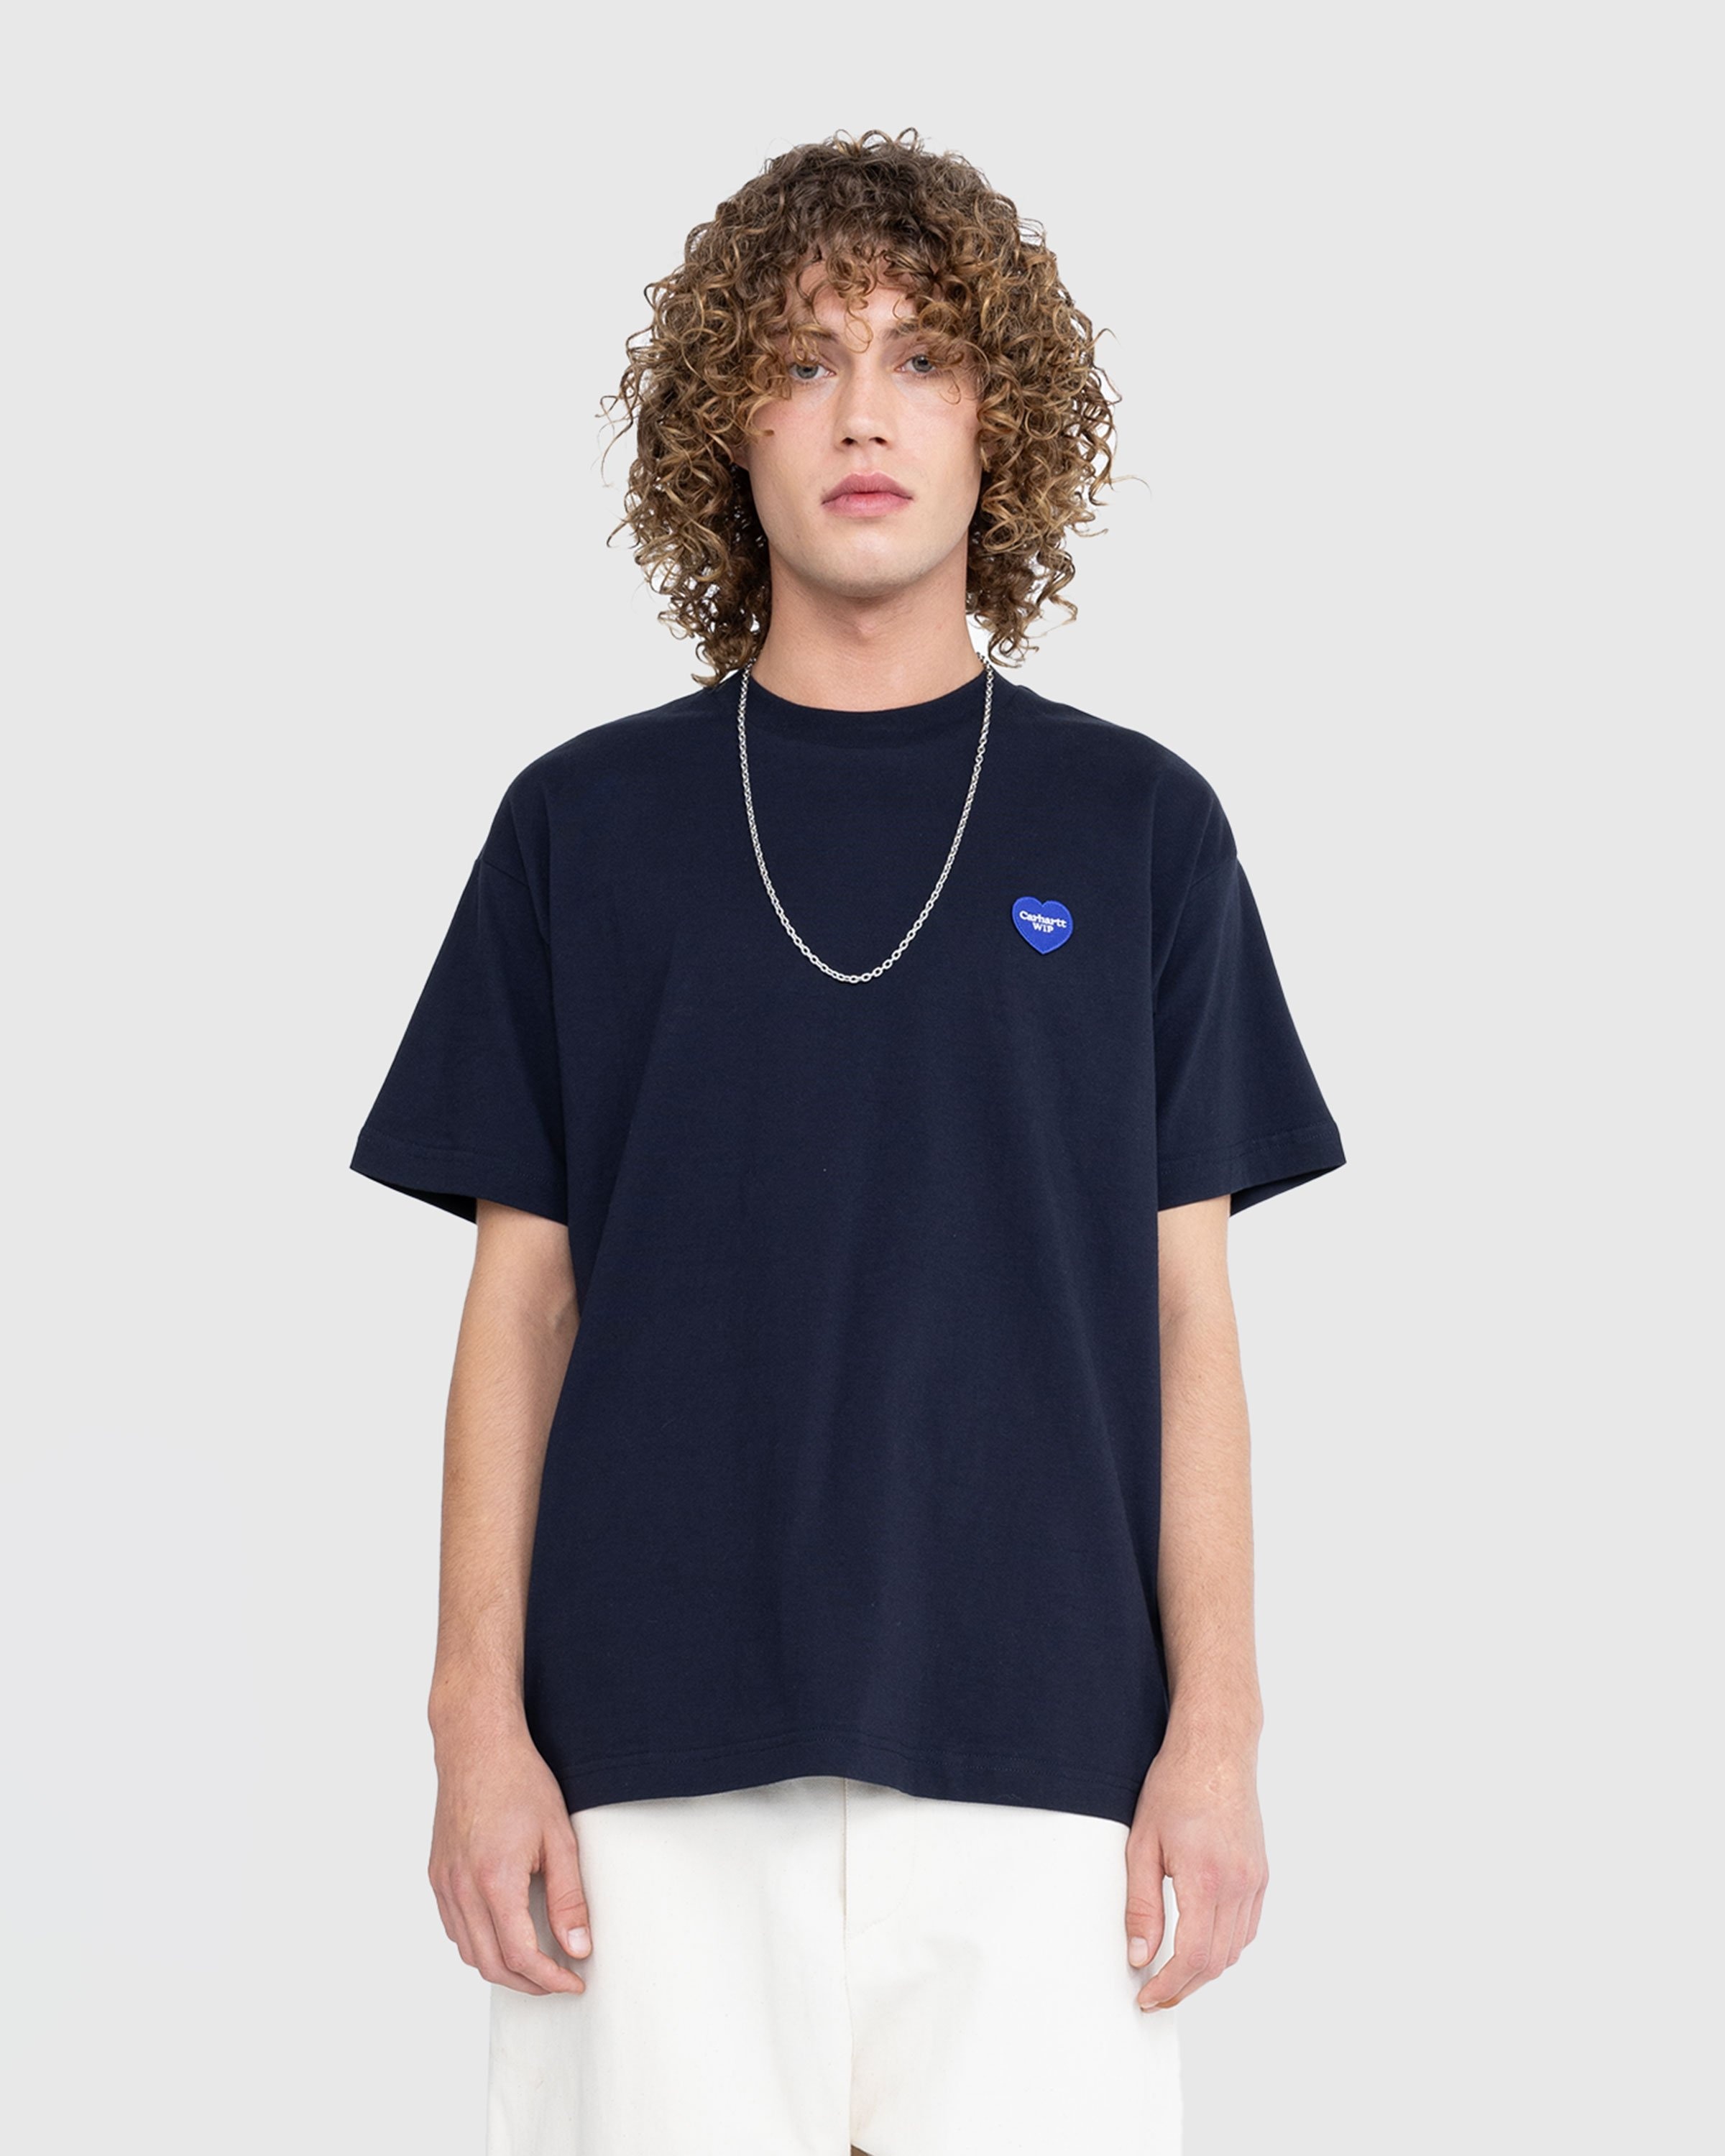 Carhartt WIP – S/S Heart Patch T-Shirt Blue | Highsnobiety Shop